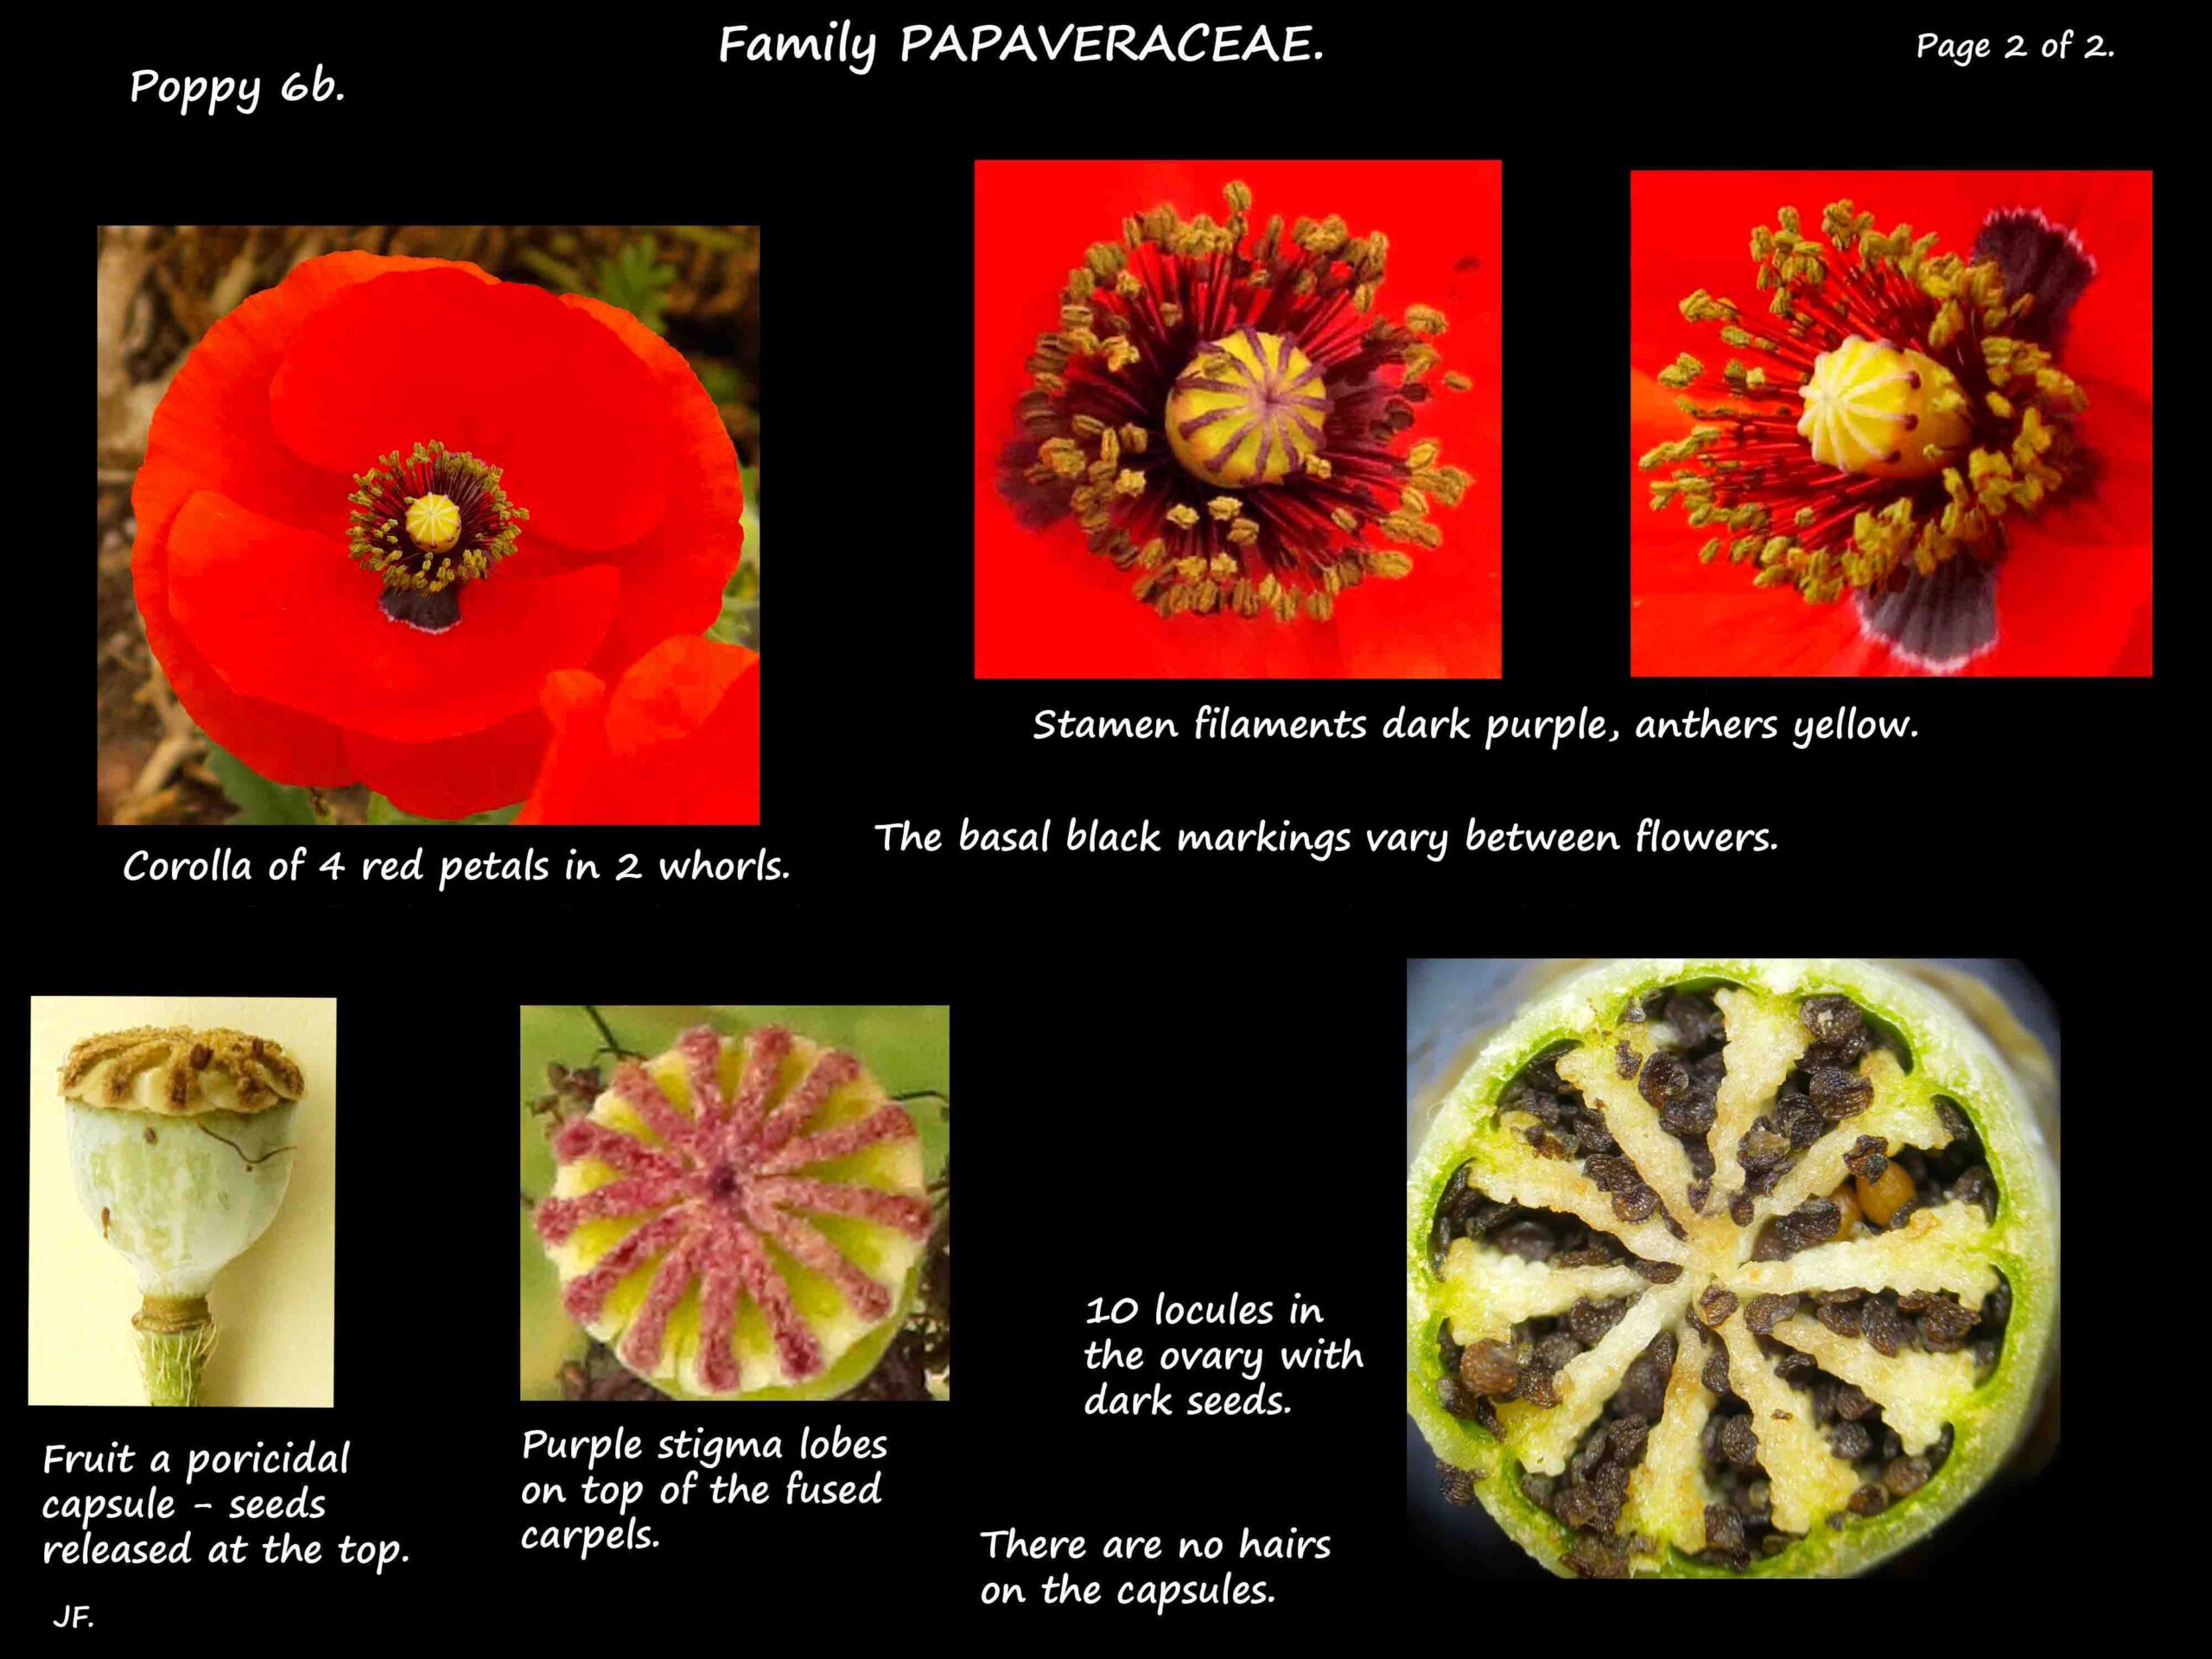 3b Red poppy flowers, stigma & ovary